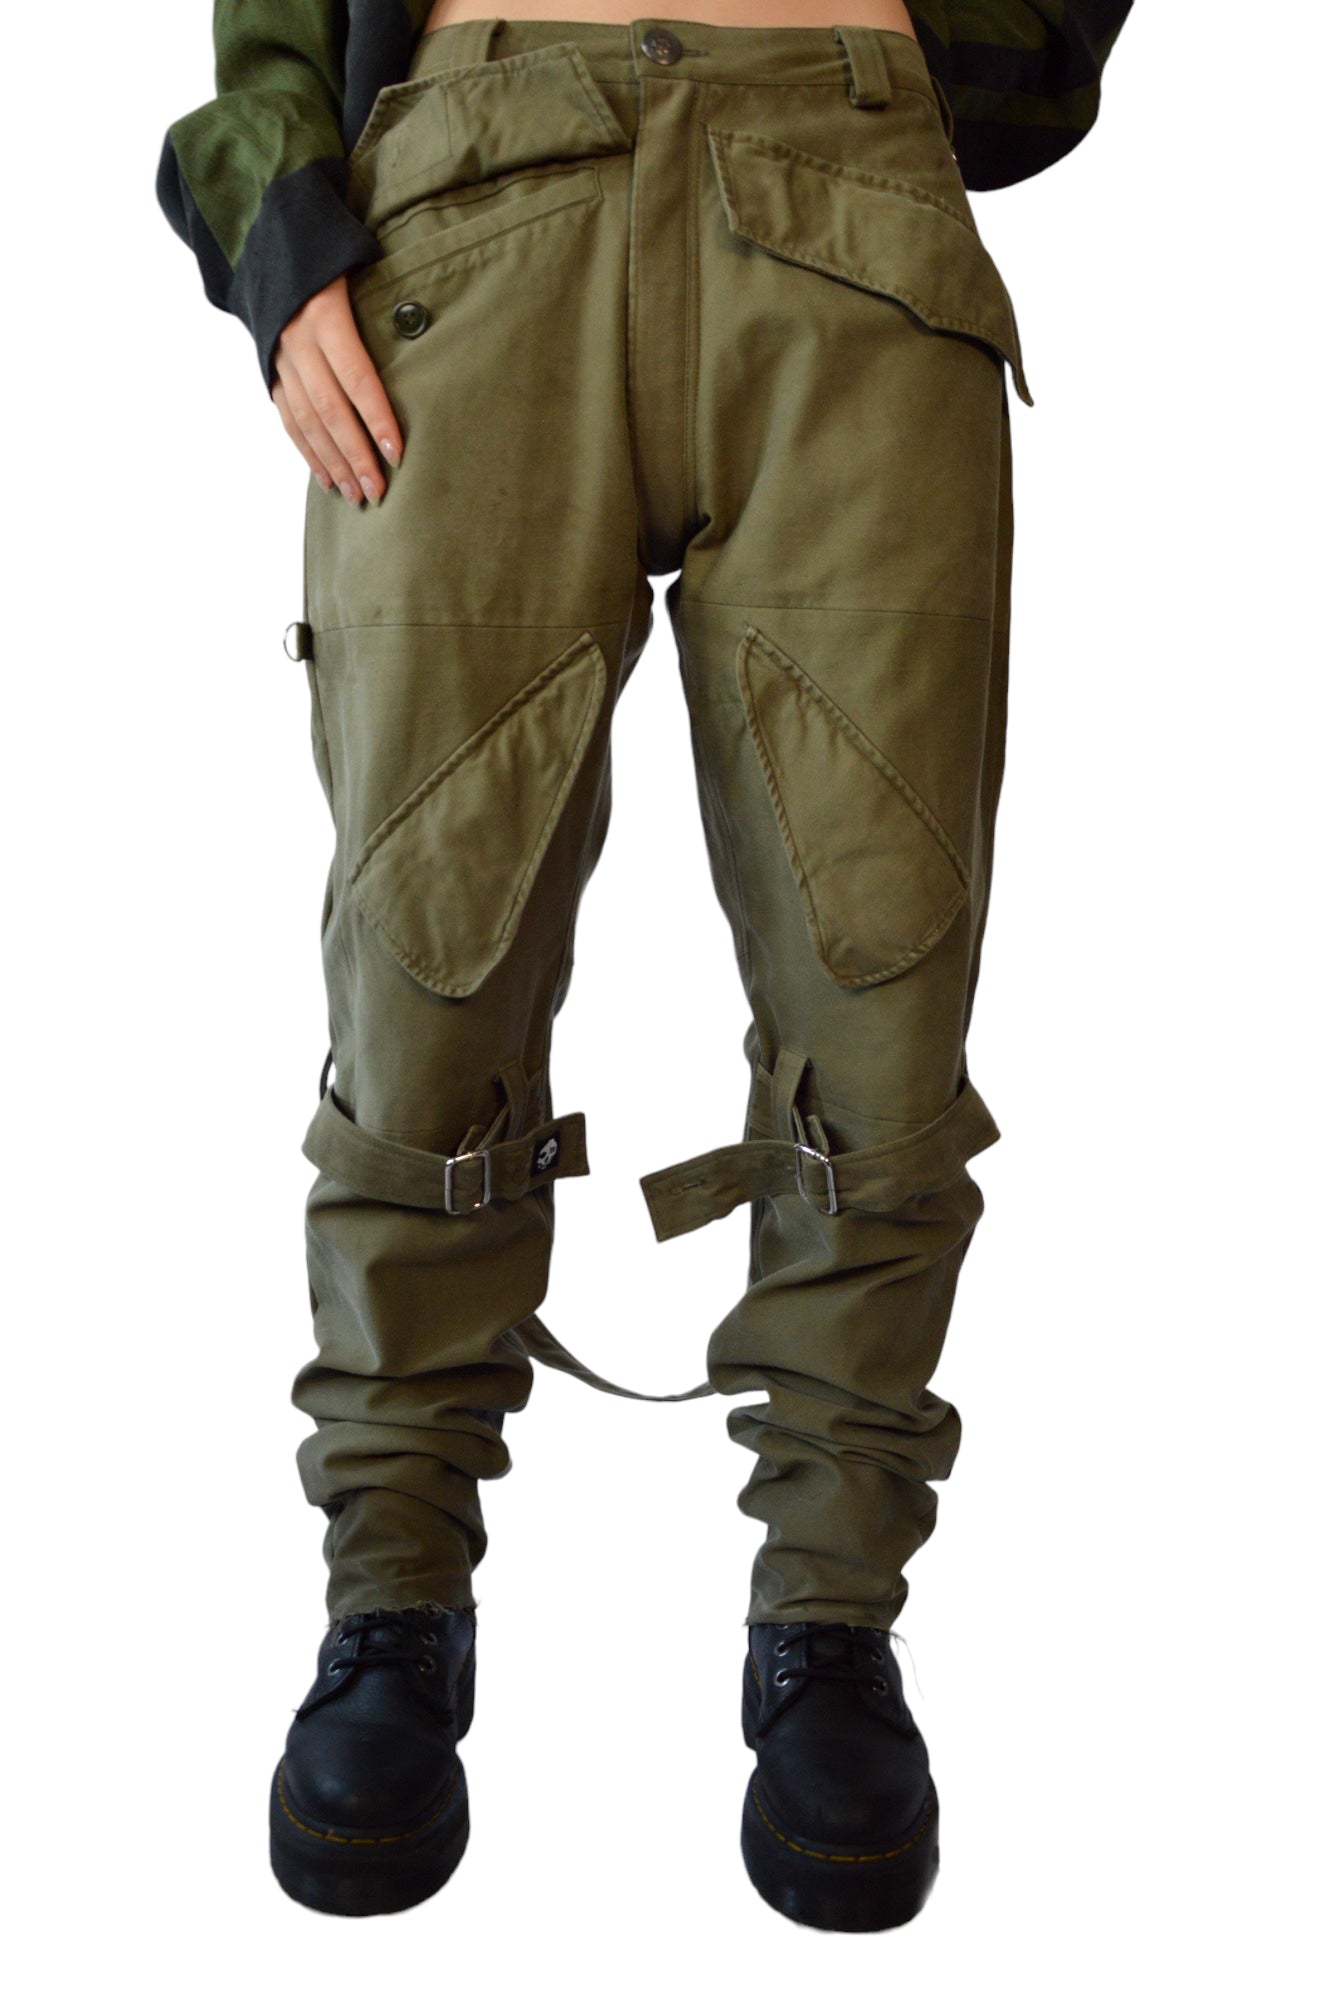 Upcycled Army Bondage trousers